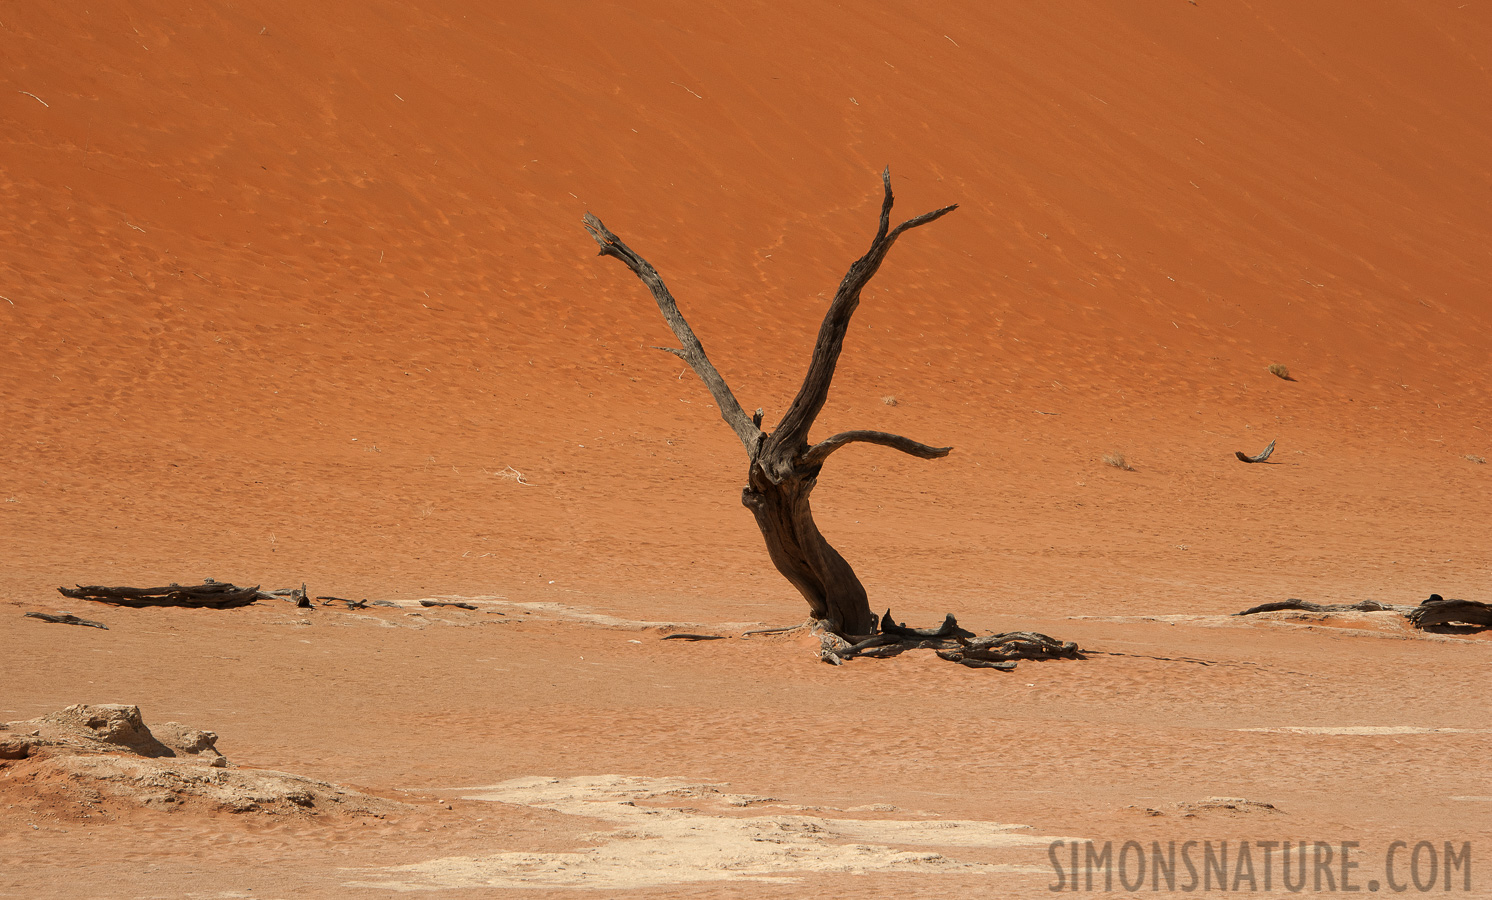 Namib-Naukluft National Park [135 mm, 1/160 sec at f / 13, ISO 400]